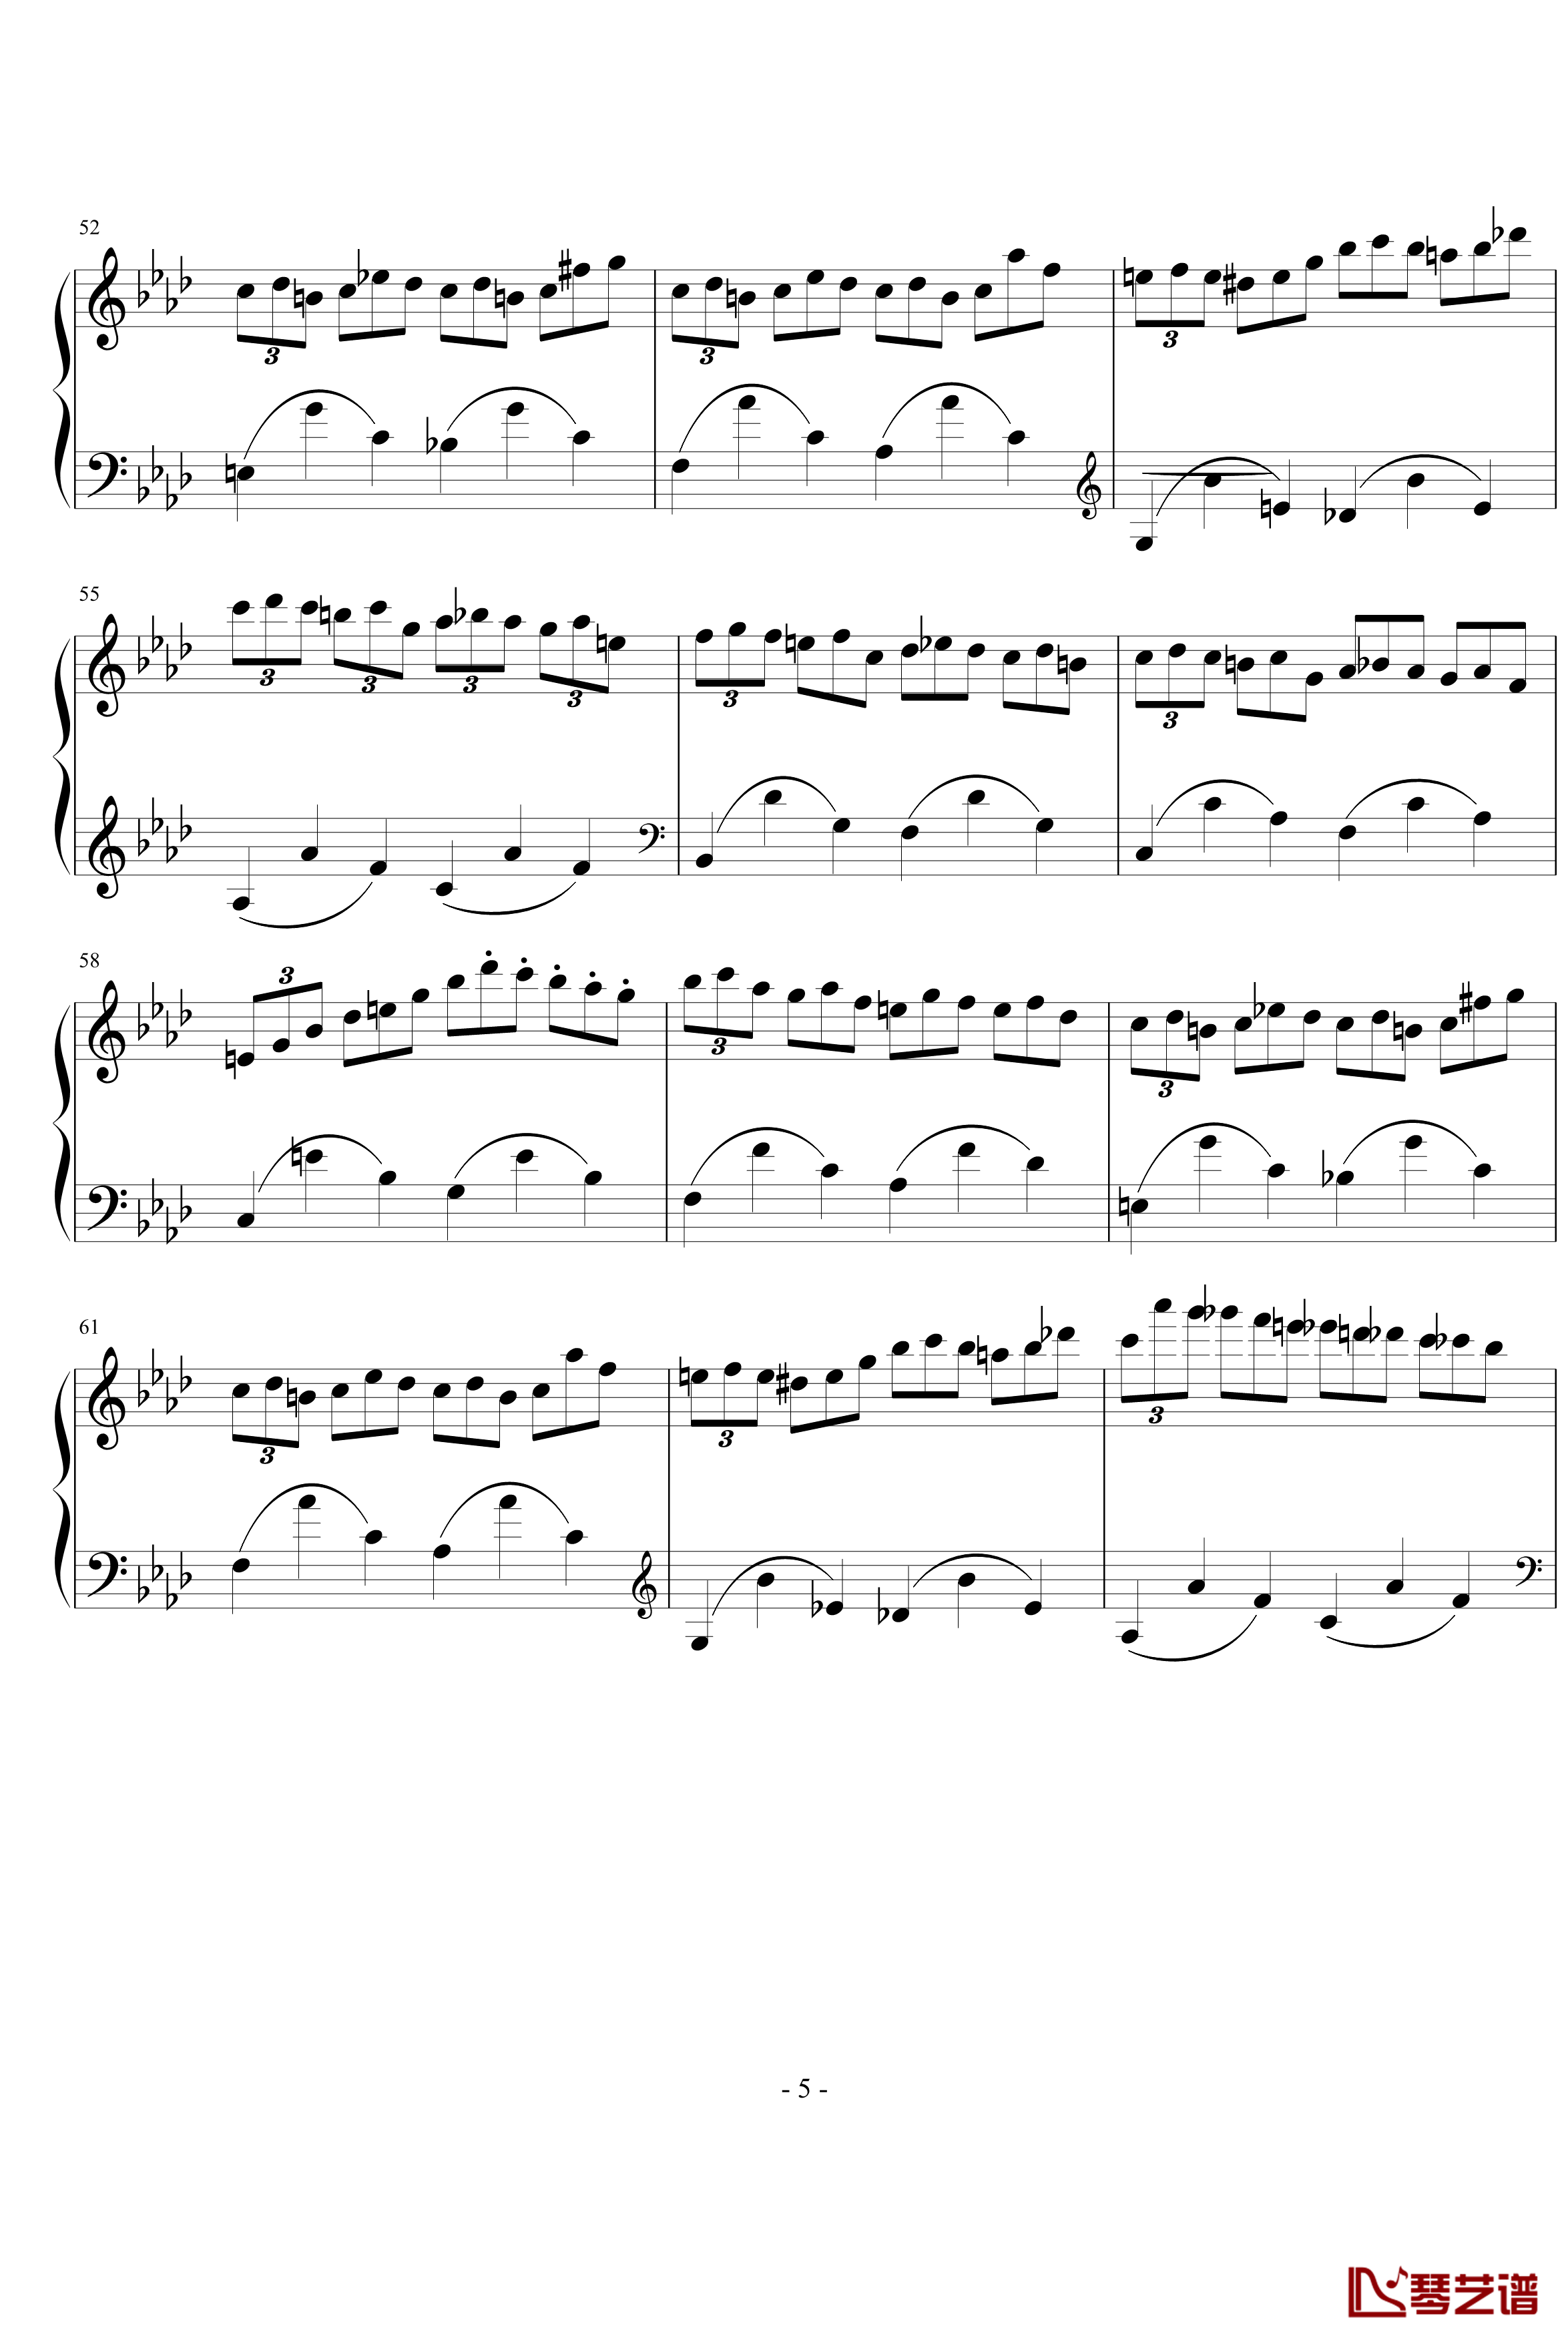 肖邦练习曲14钢琴谱-肖邦-chopin